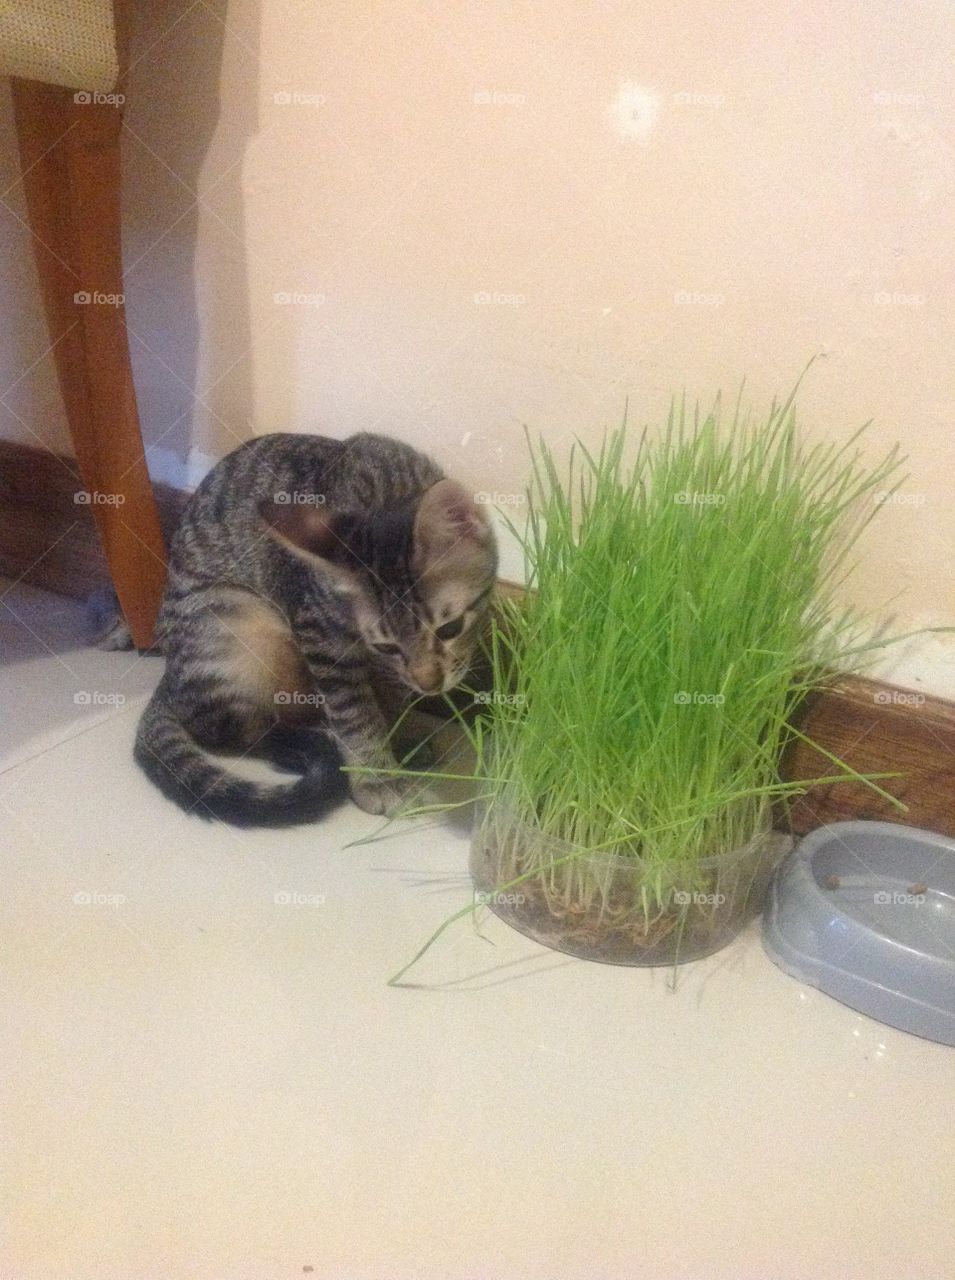 Cat enjoy her nutrition grass